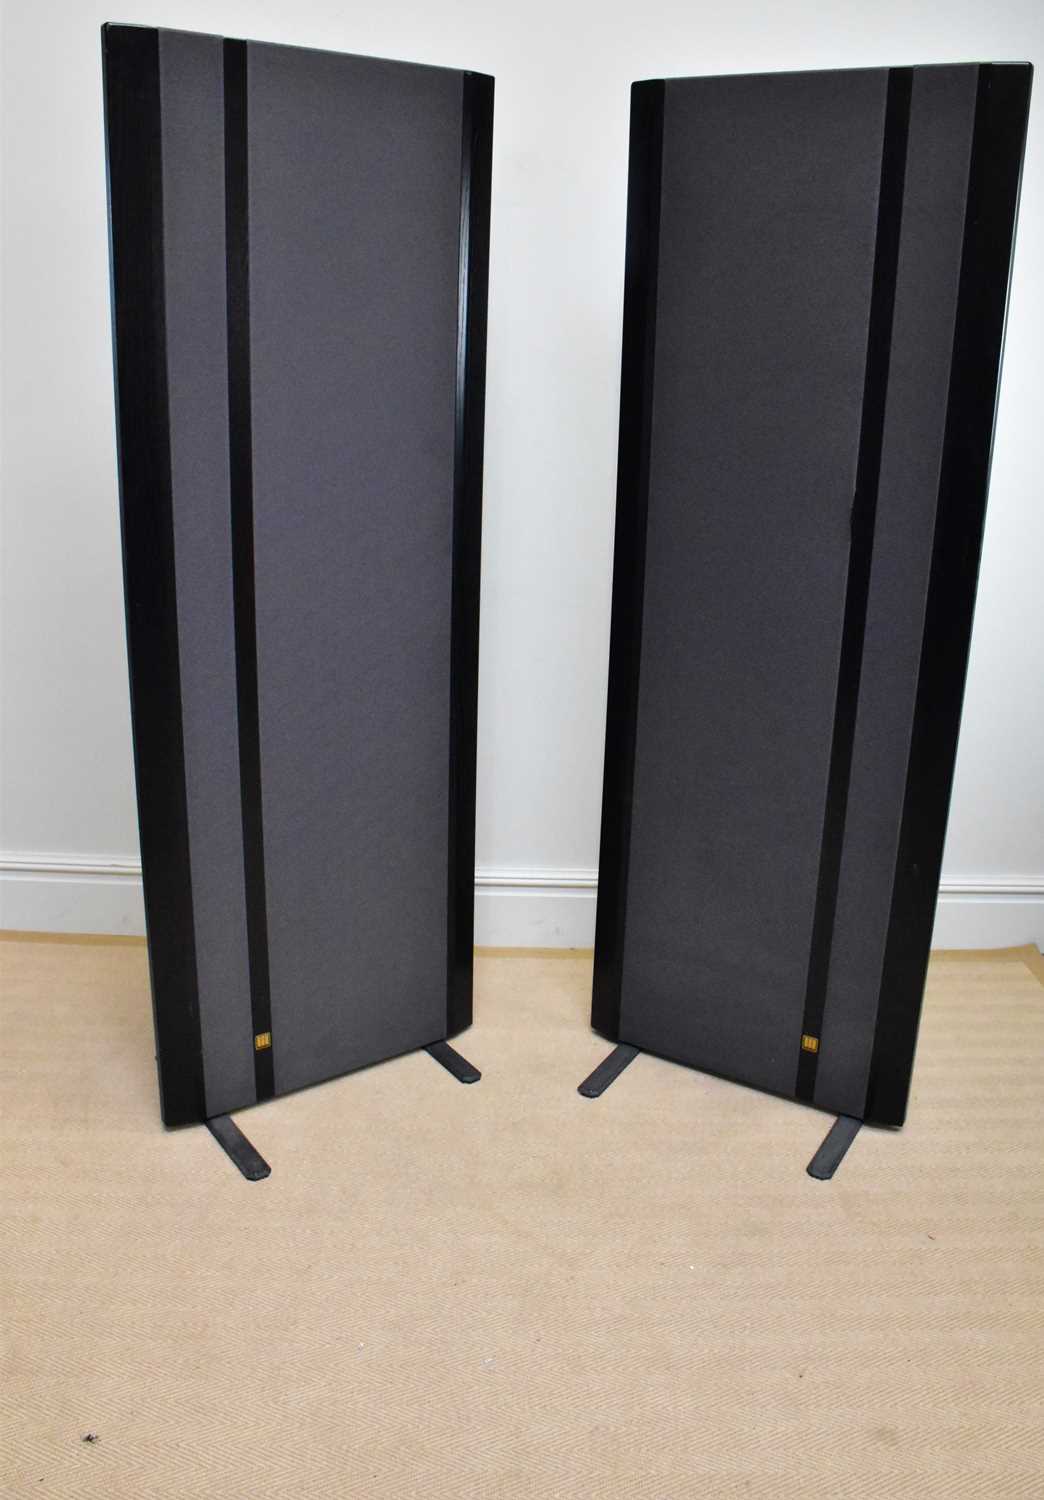 MAGNEPAN; a pair of model MG20 floor standing loudspeakers, serial number 0091-1and 0091-2, height